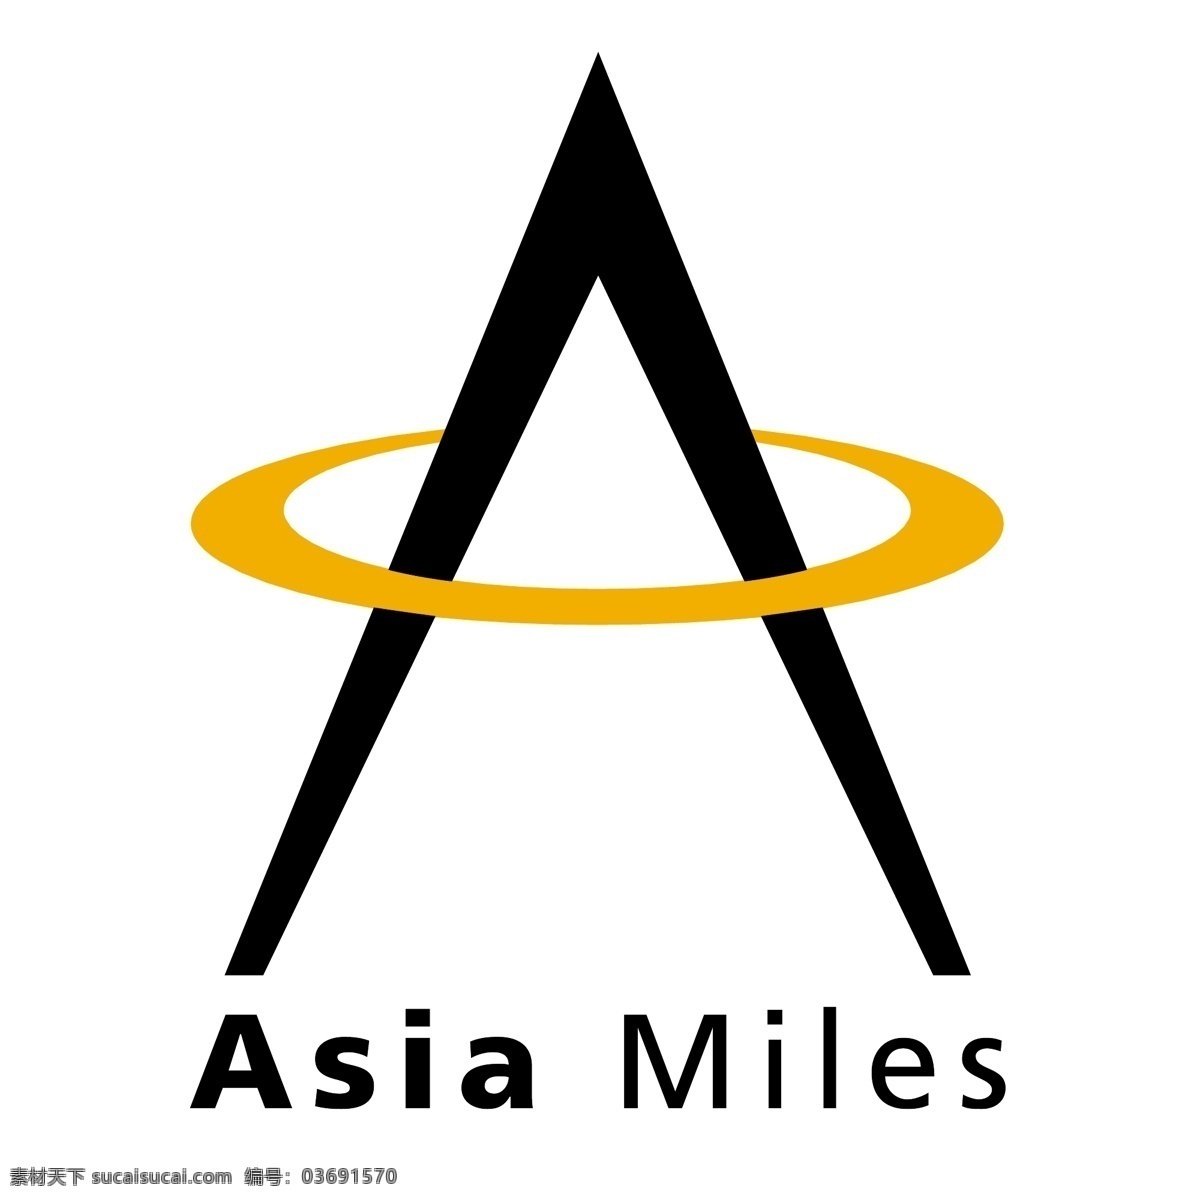 亚洲万里 亚洲 亚洲英里 英里 矢量图像 免费 矢量 艺术 亚洲免费 图形 图形设计 亚洲艺术 载体 亚洲免费矢量 建筑家居